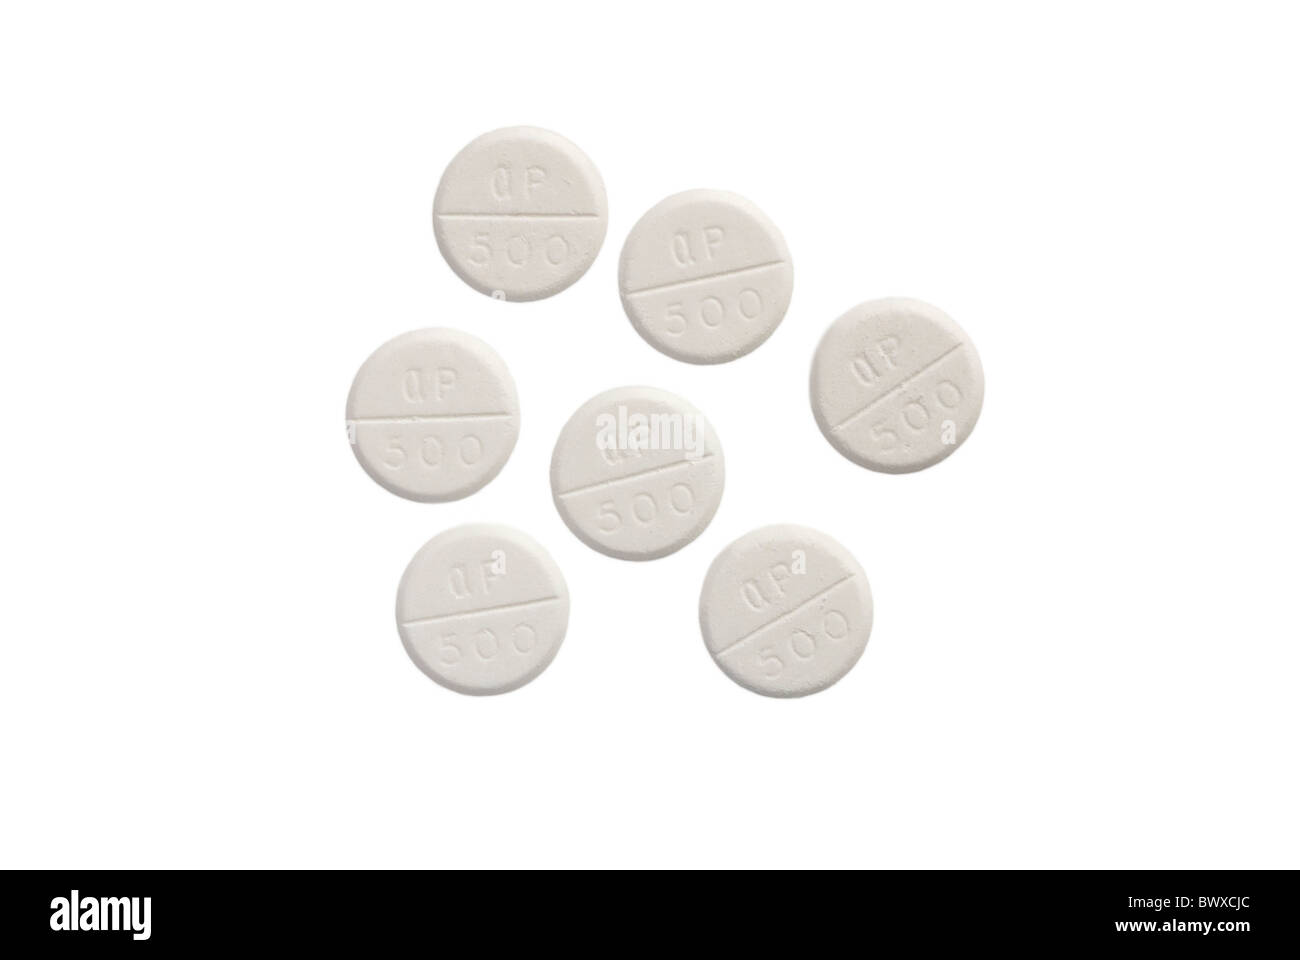 White Paracetomol Pills on White Background Stock Photo